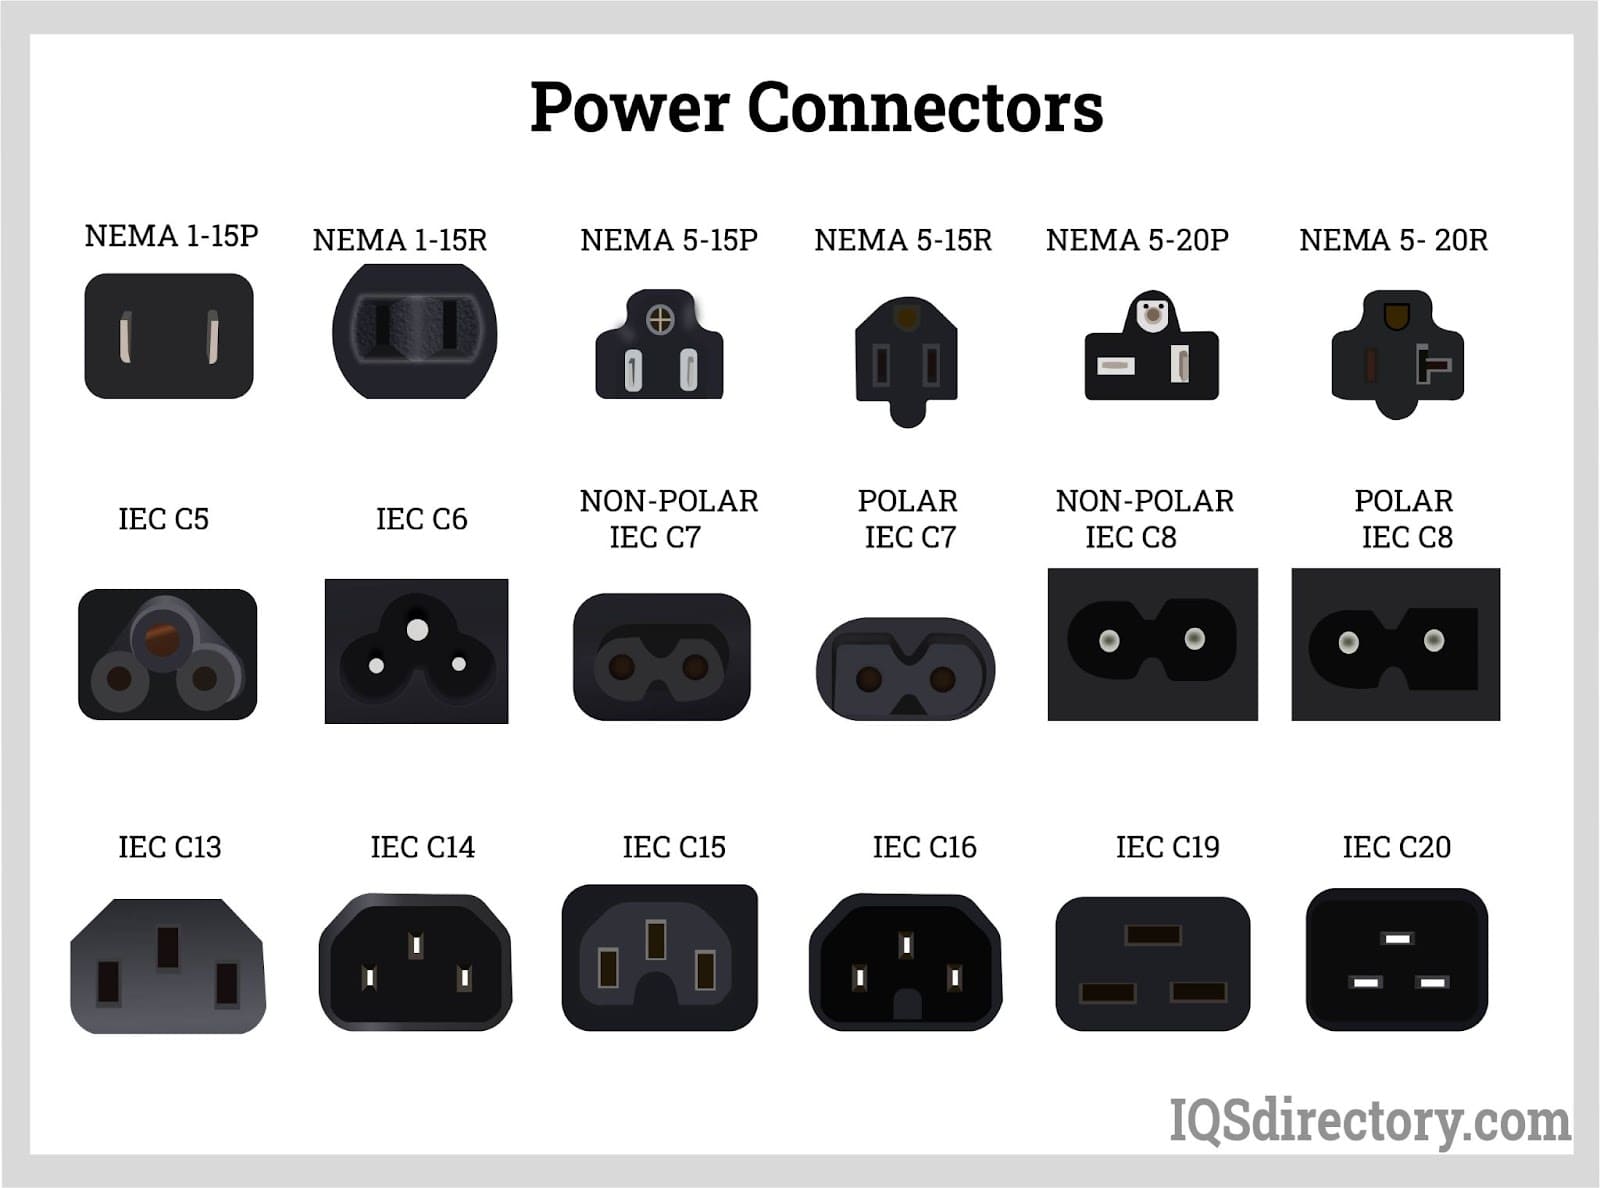 Power Connectors